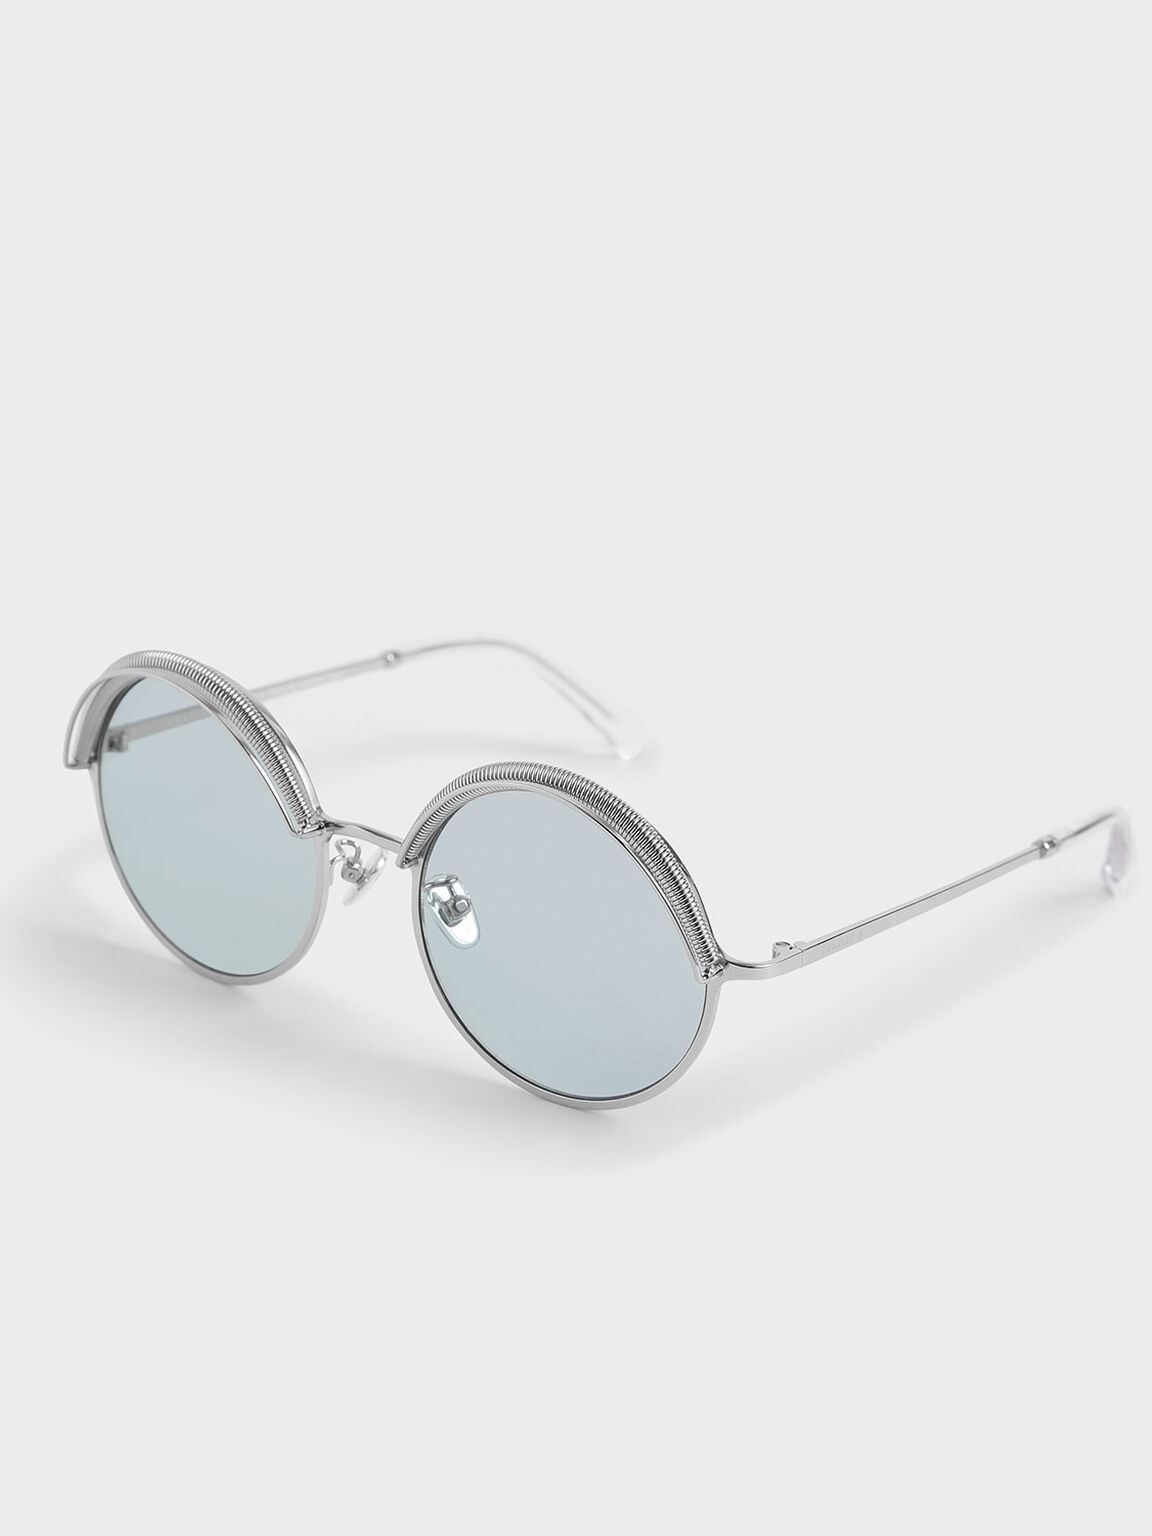 Half Rim Round Sunglasses, Blue, hi-res